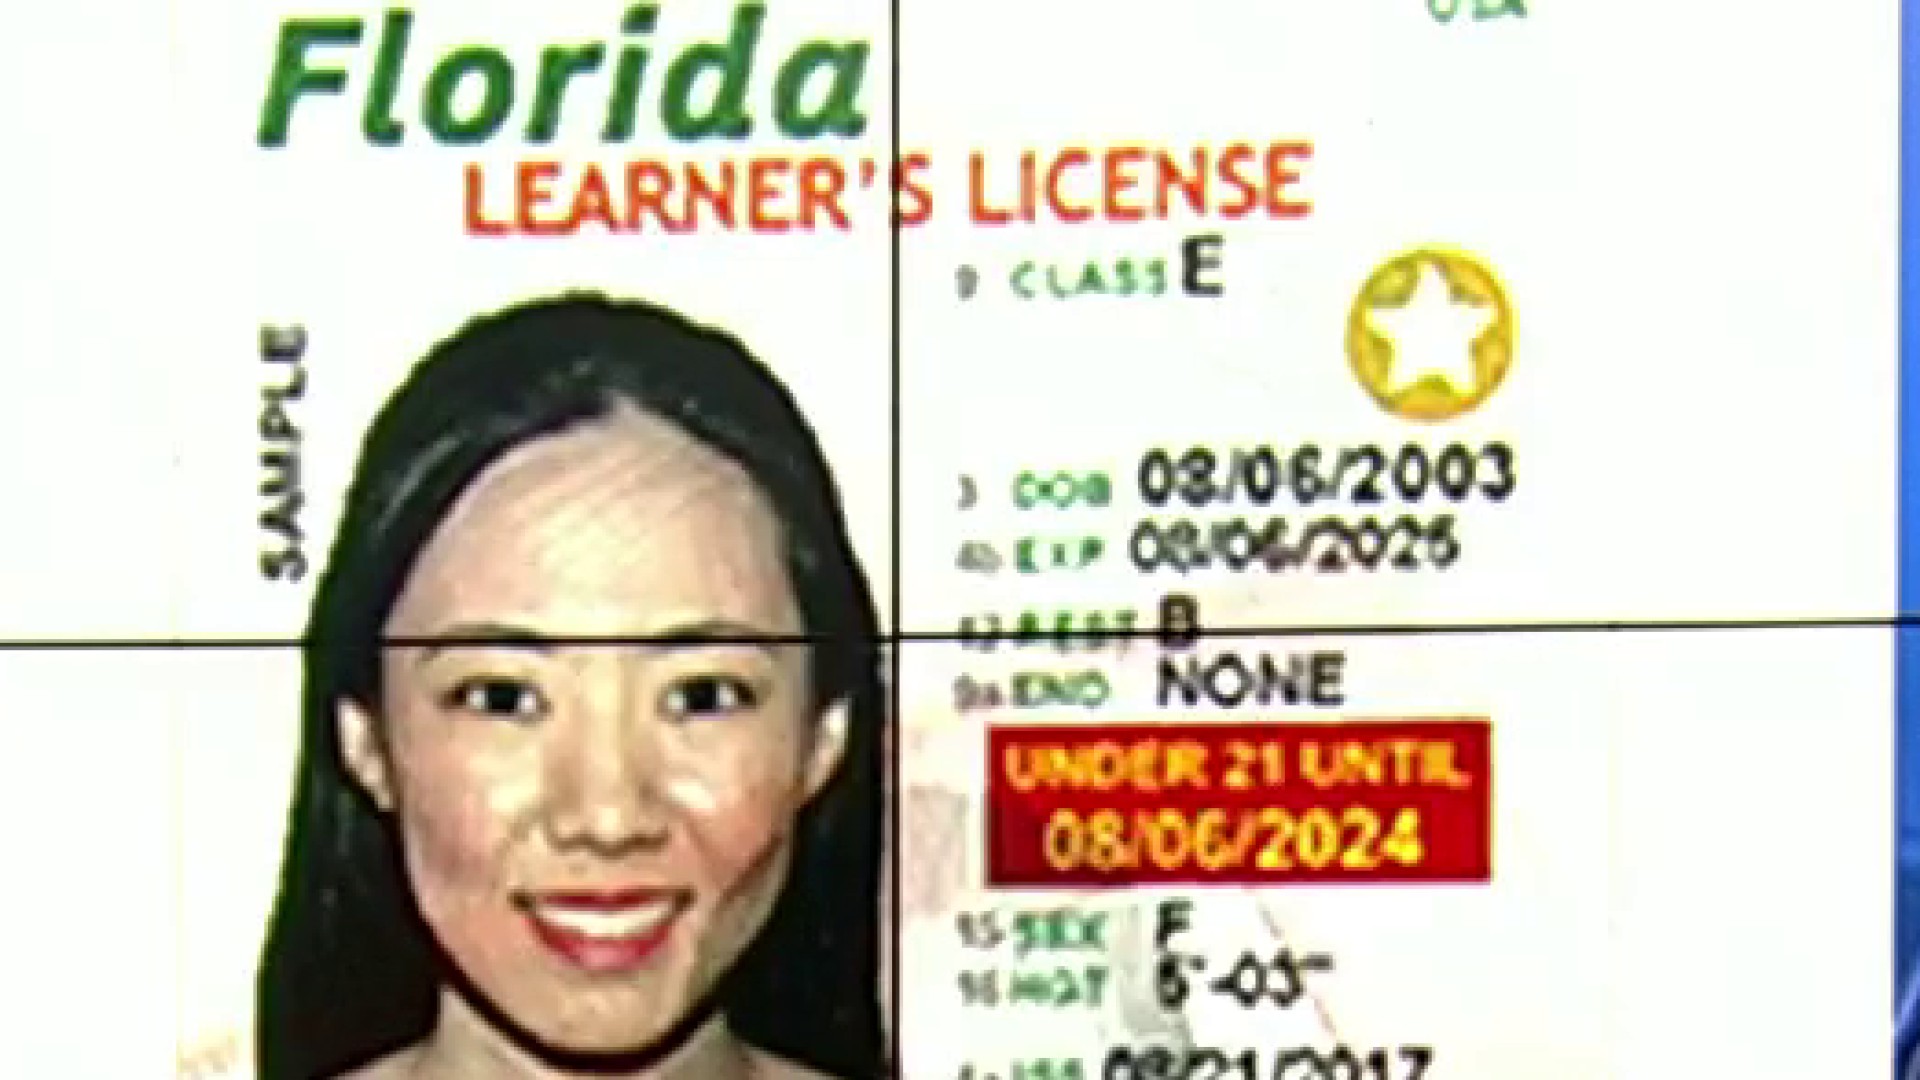 fl drivers license suspension check